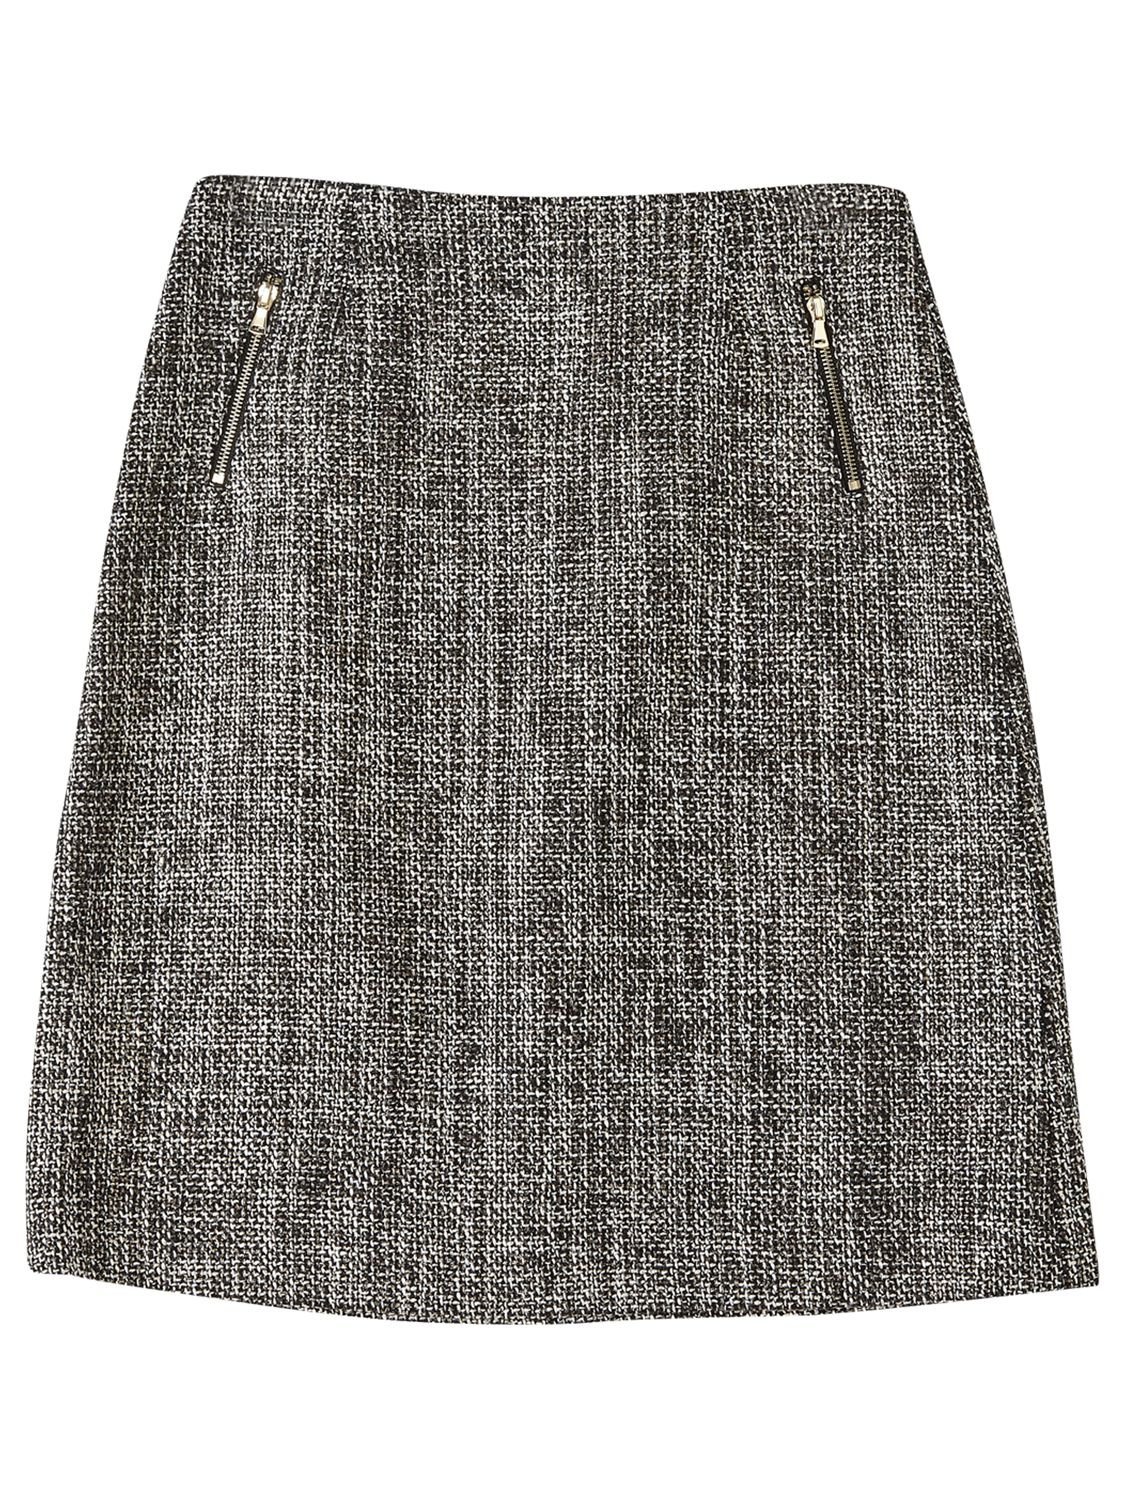 Grey | Women's Skirts | John Lewis